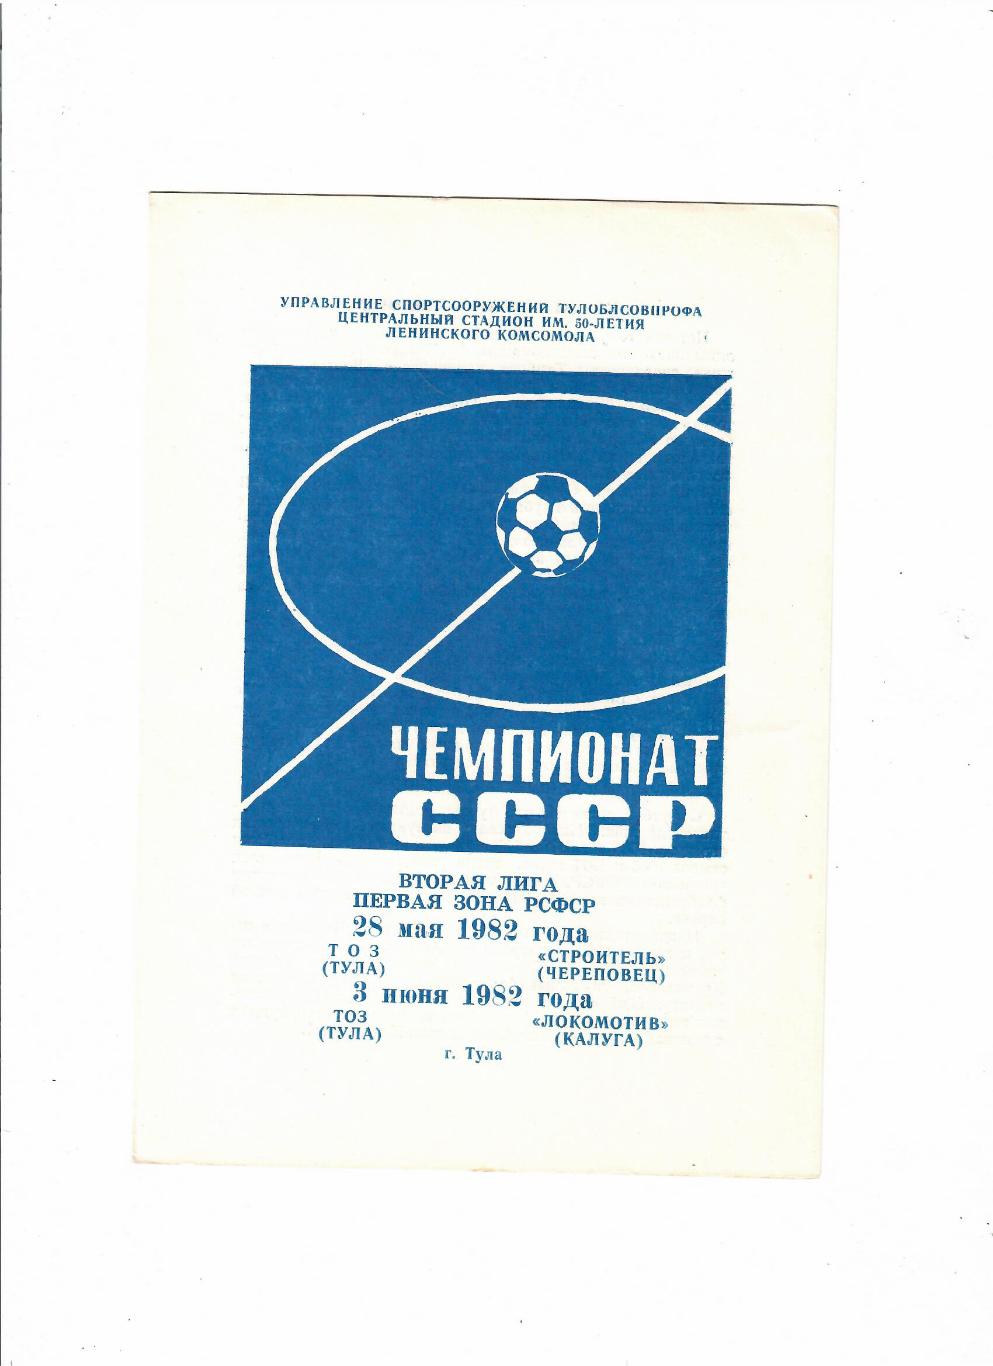 ТОЗ Тула - Строитель Череповец/Локомотив Калуга 1982